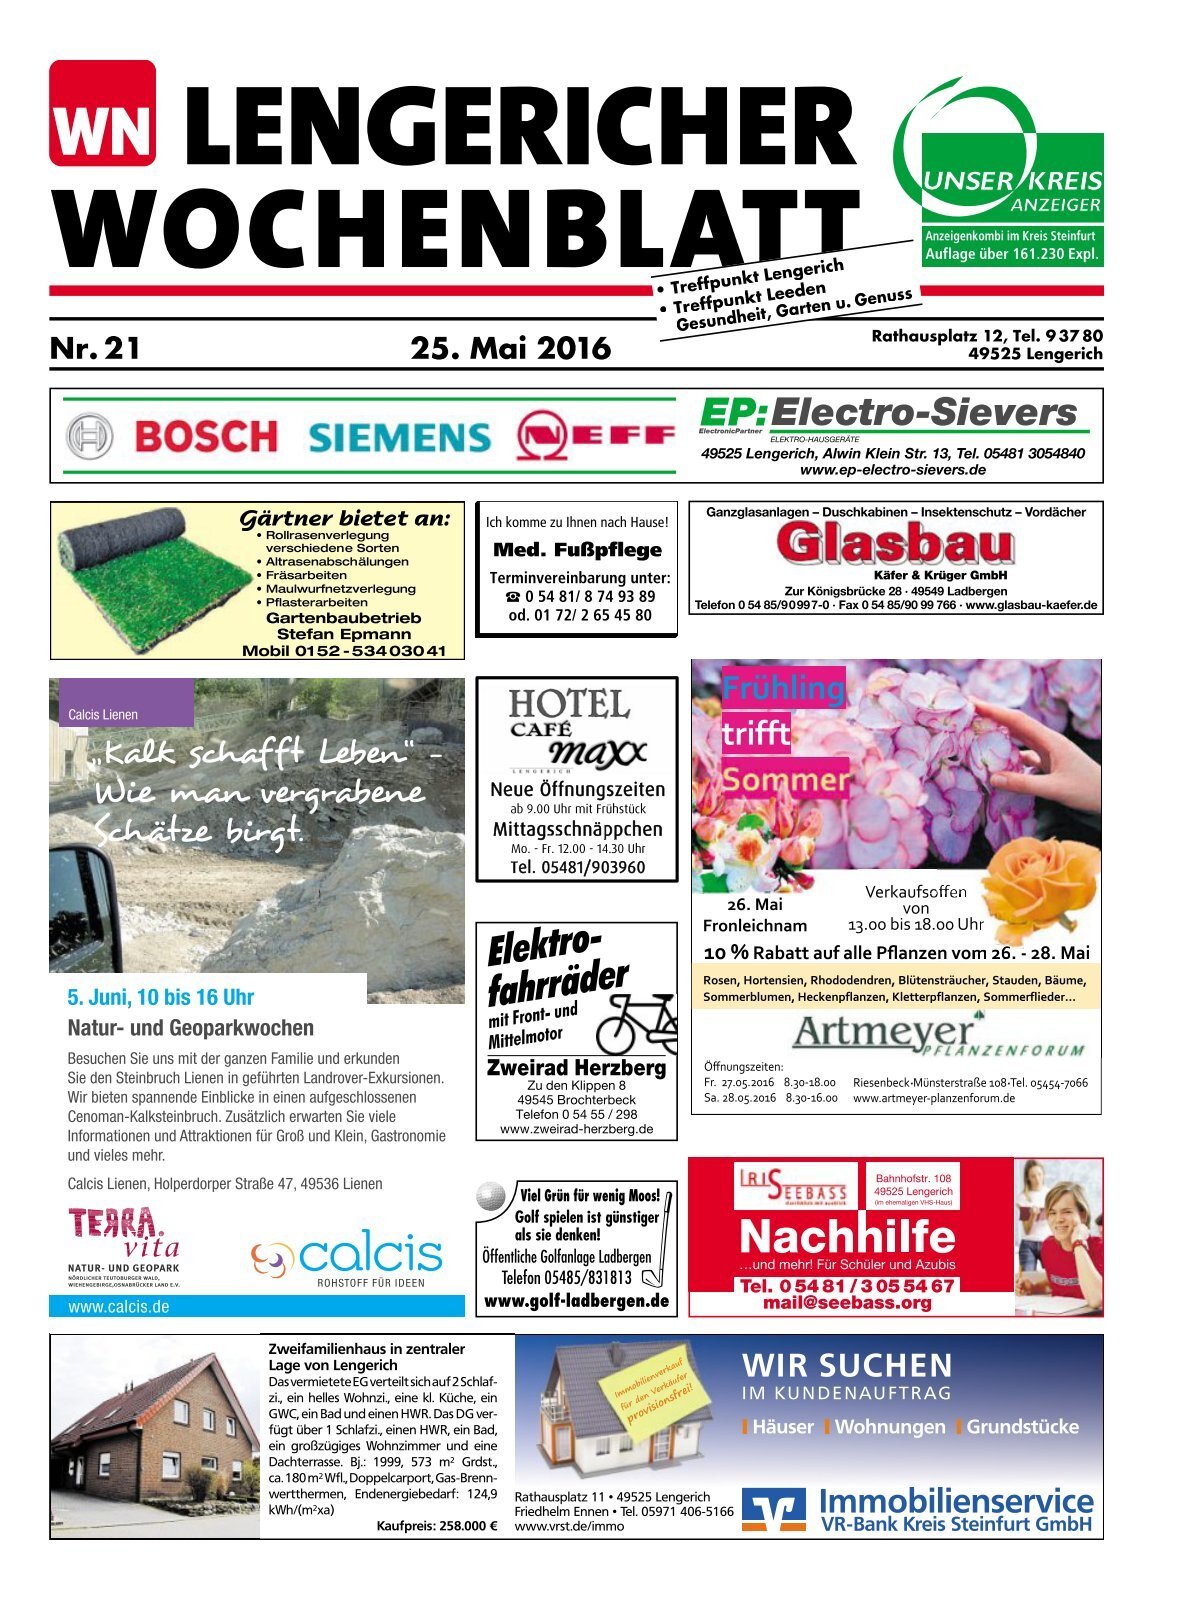 lengericherwochenblatt-lengerich_25-05-2016